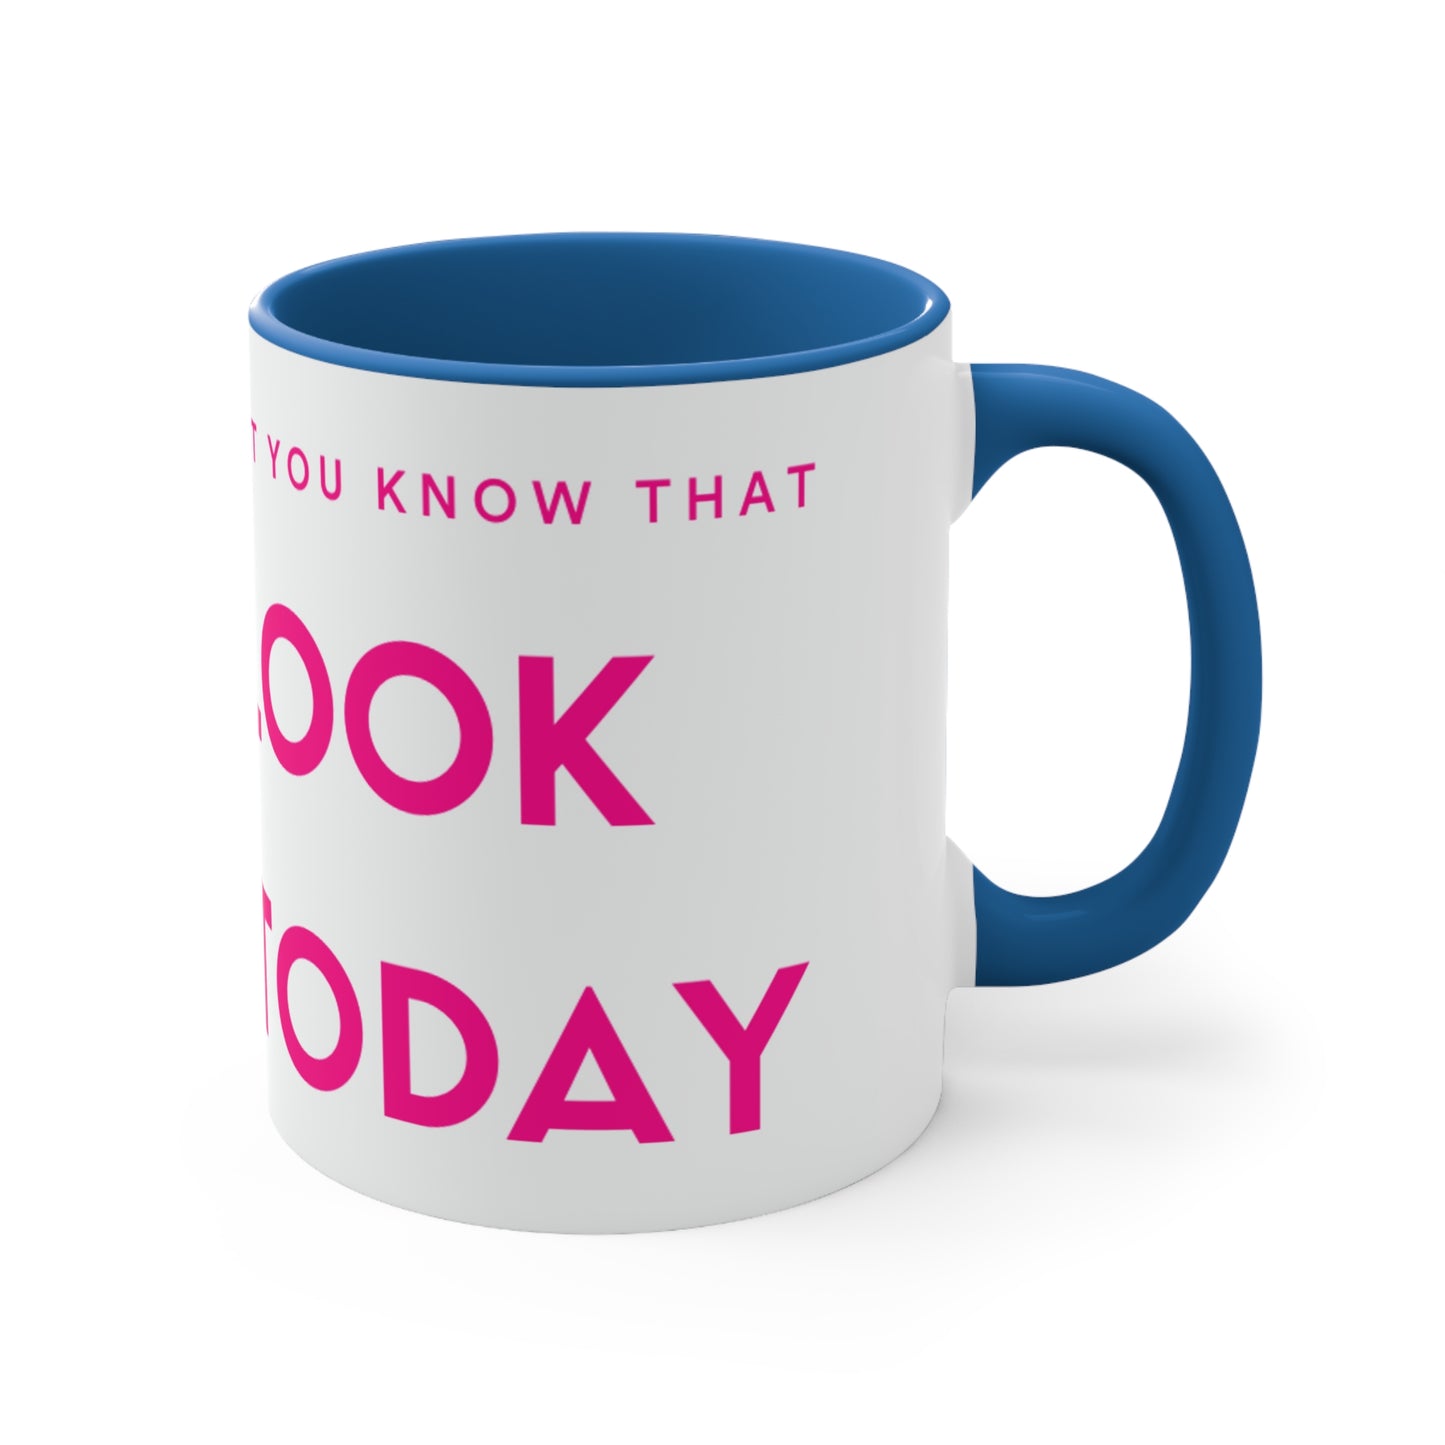 "You Look Great Today" Joyful Coffee Mug, 11oz